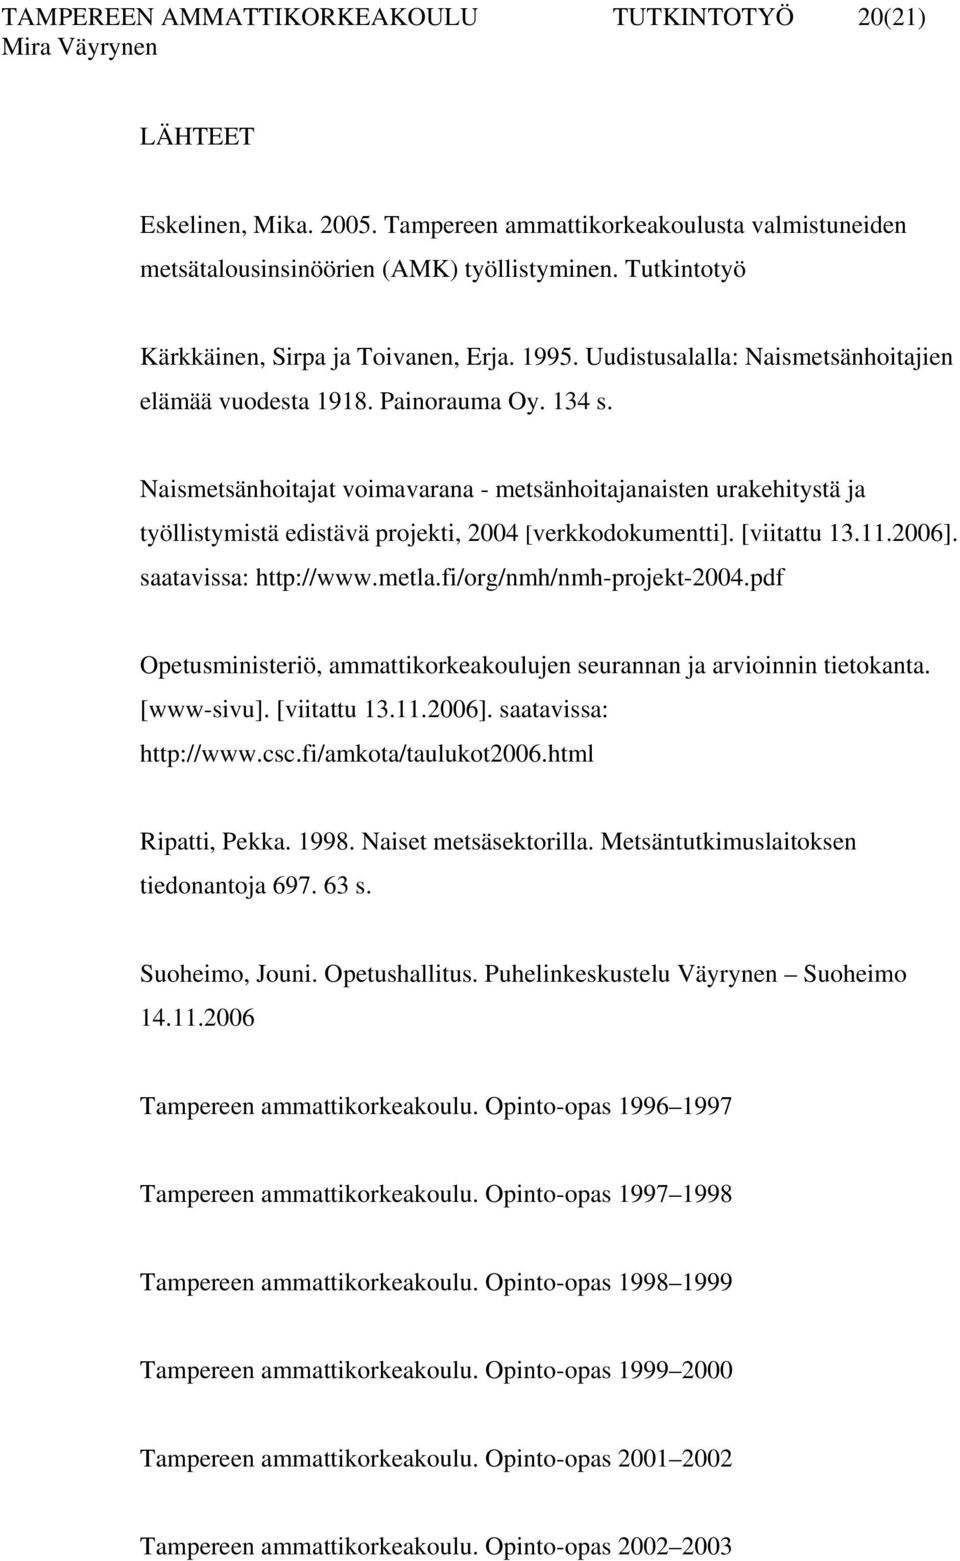 Naismetsänhoitajat voimavarana - metsänhoitajanaisten urakehitystä ja työllistymistä edistävä projekti, 2004 [verkkodokumentti]. [viitattu 13.11.2006]. saatavissa: http://www.metla.